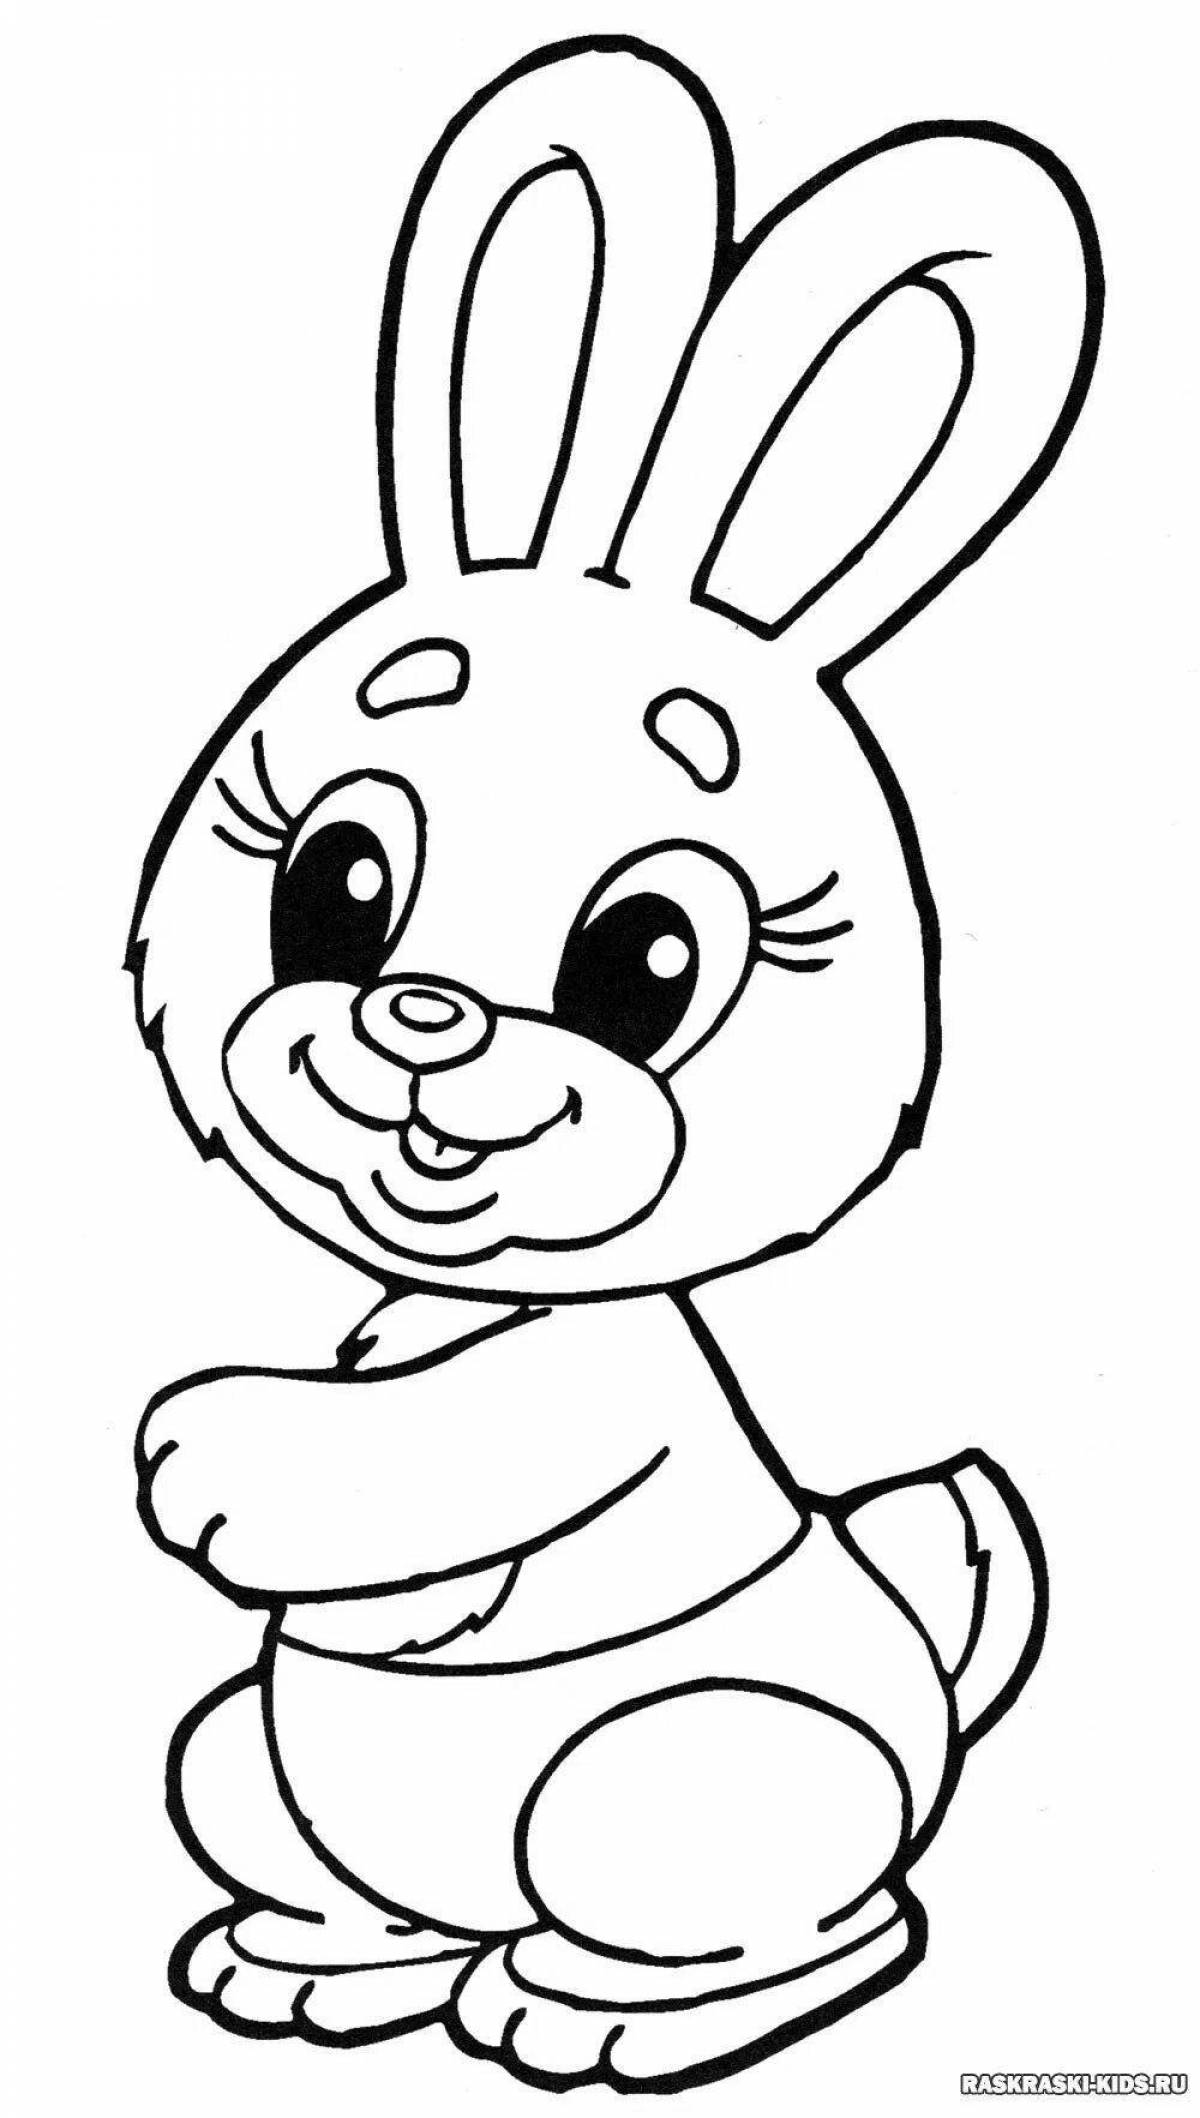 Оживленная раскраска кролик с принтом